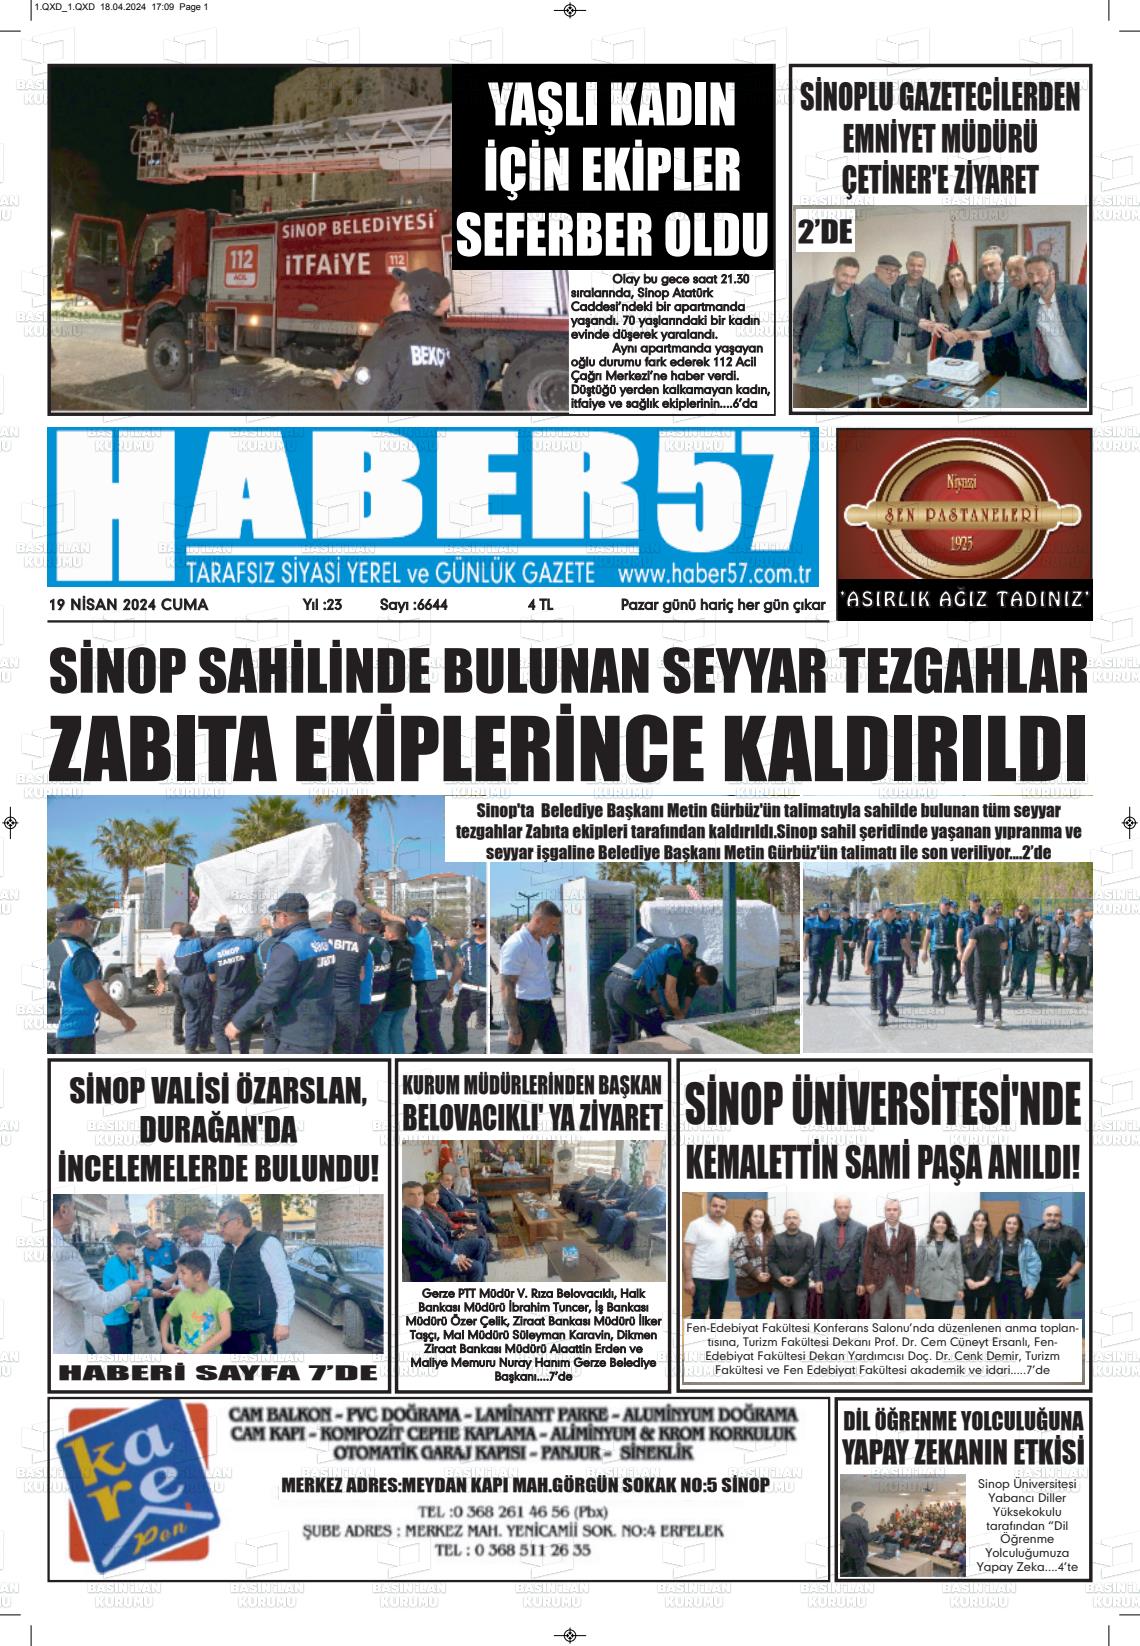 19 Nisan 2024 Haber 57 Gazete Manşeti